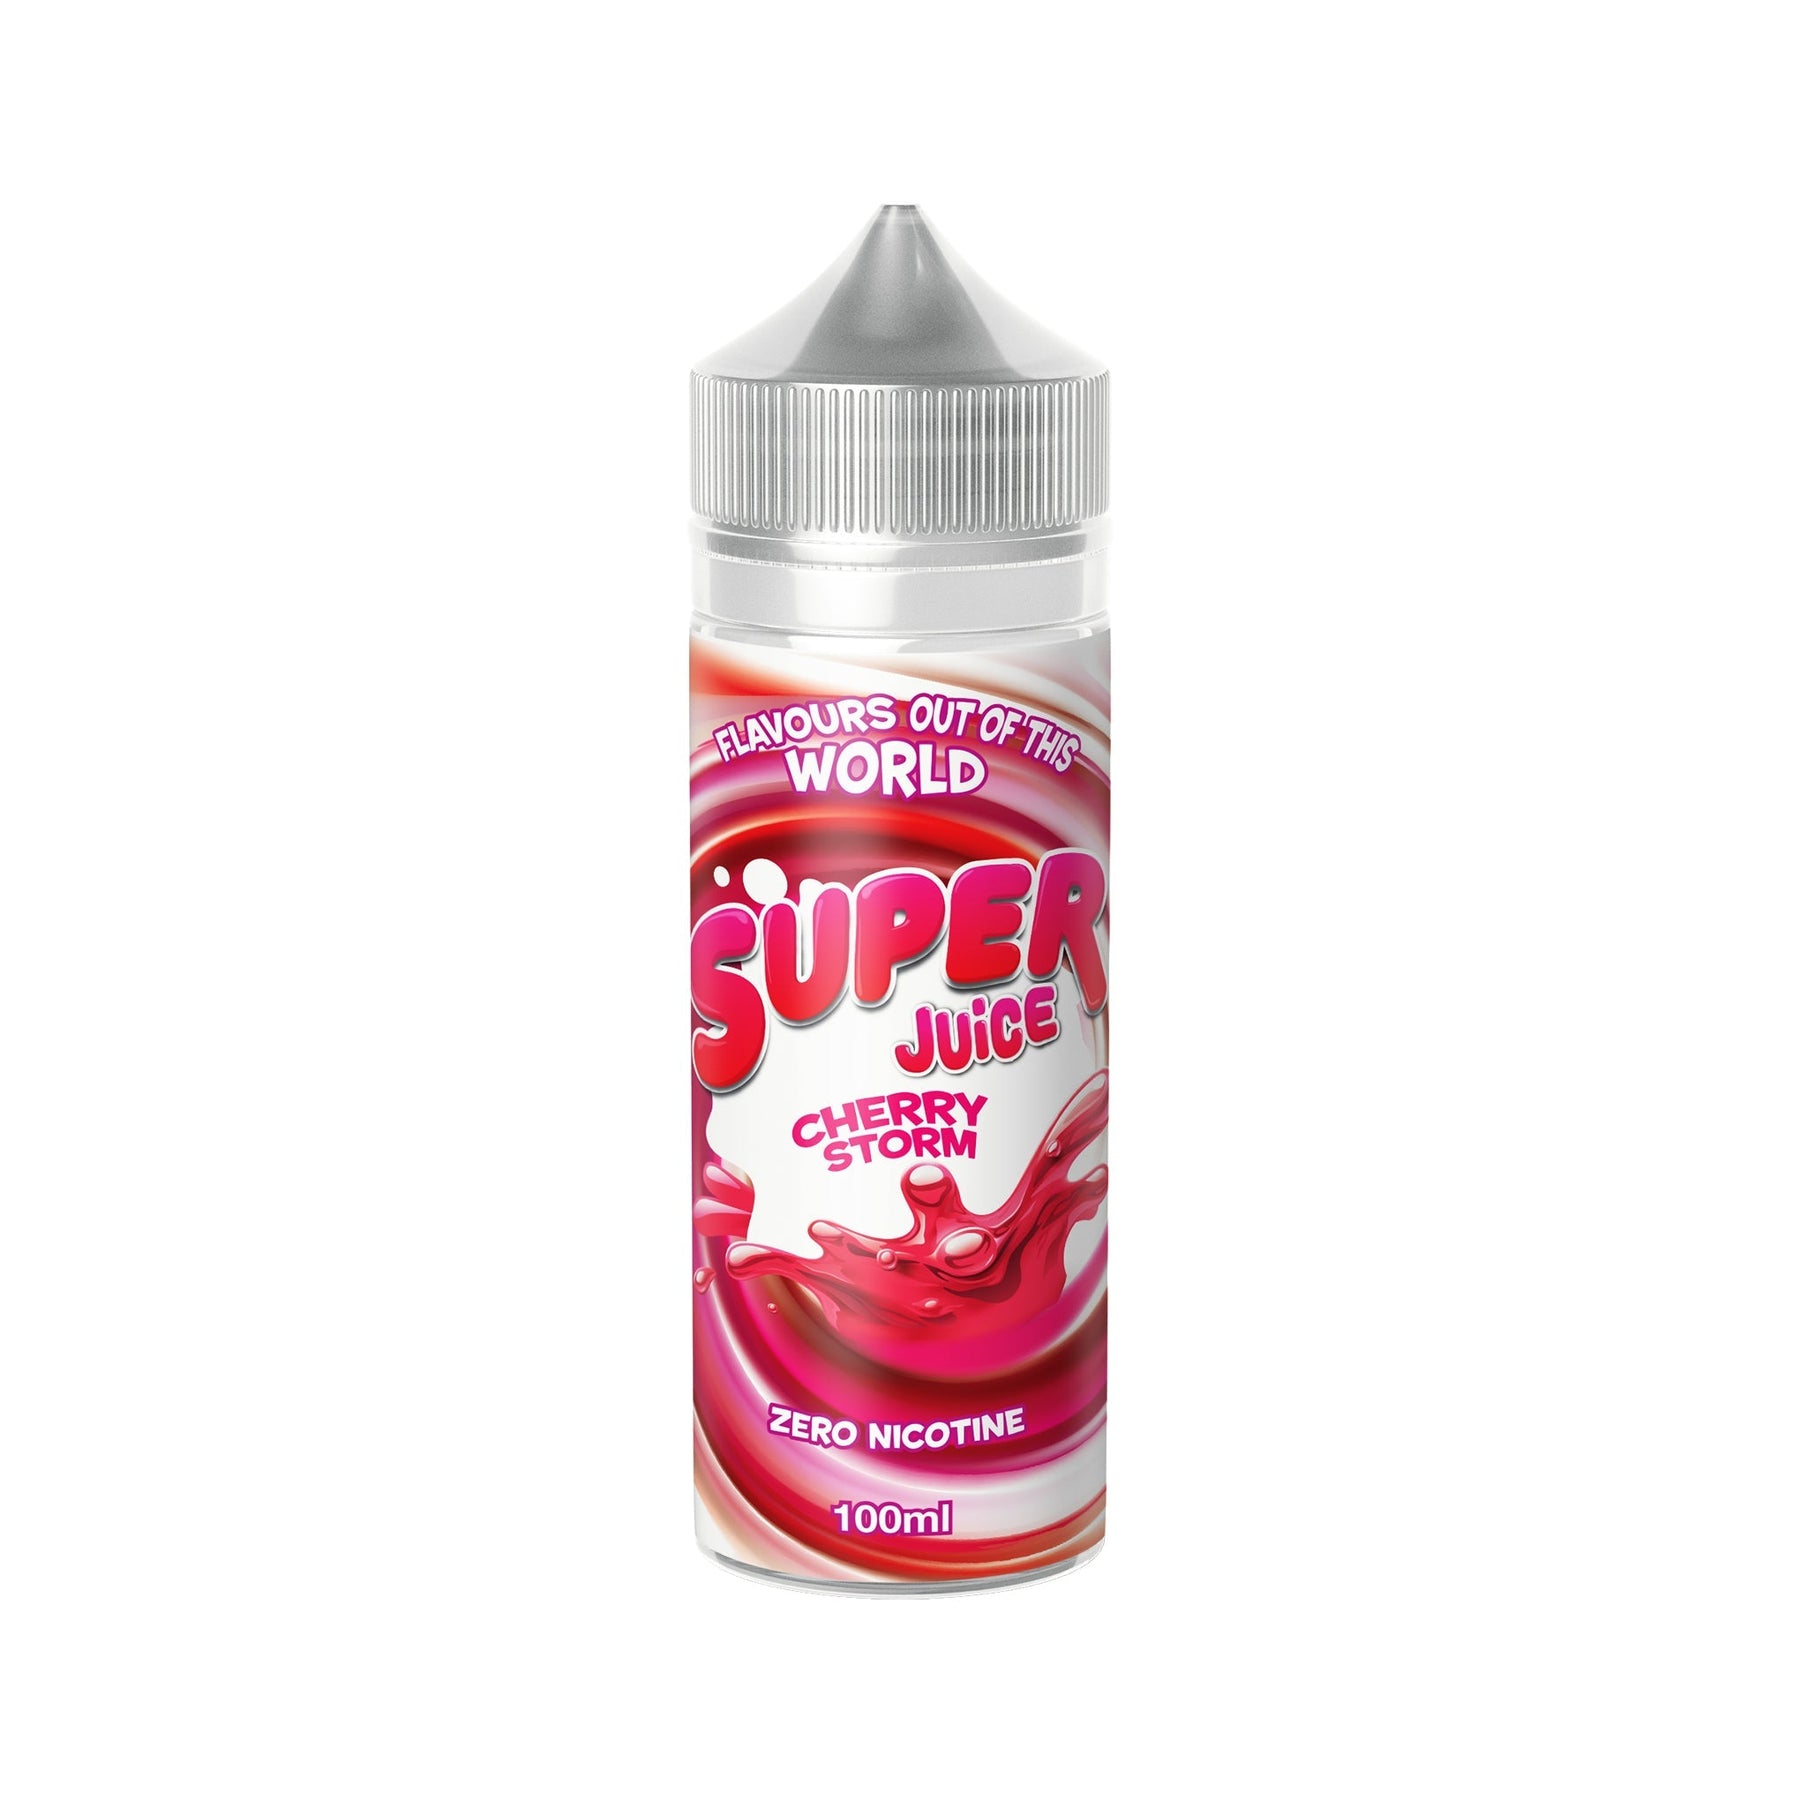 Super Juice Short Fill E-Liquid by IVG Cherry Storm 